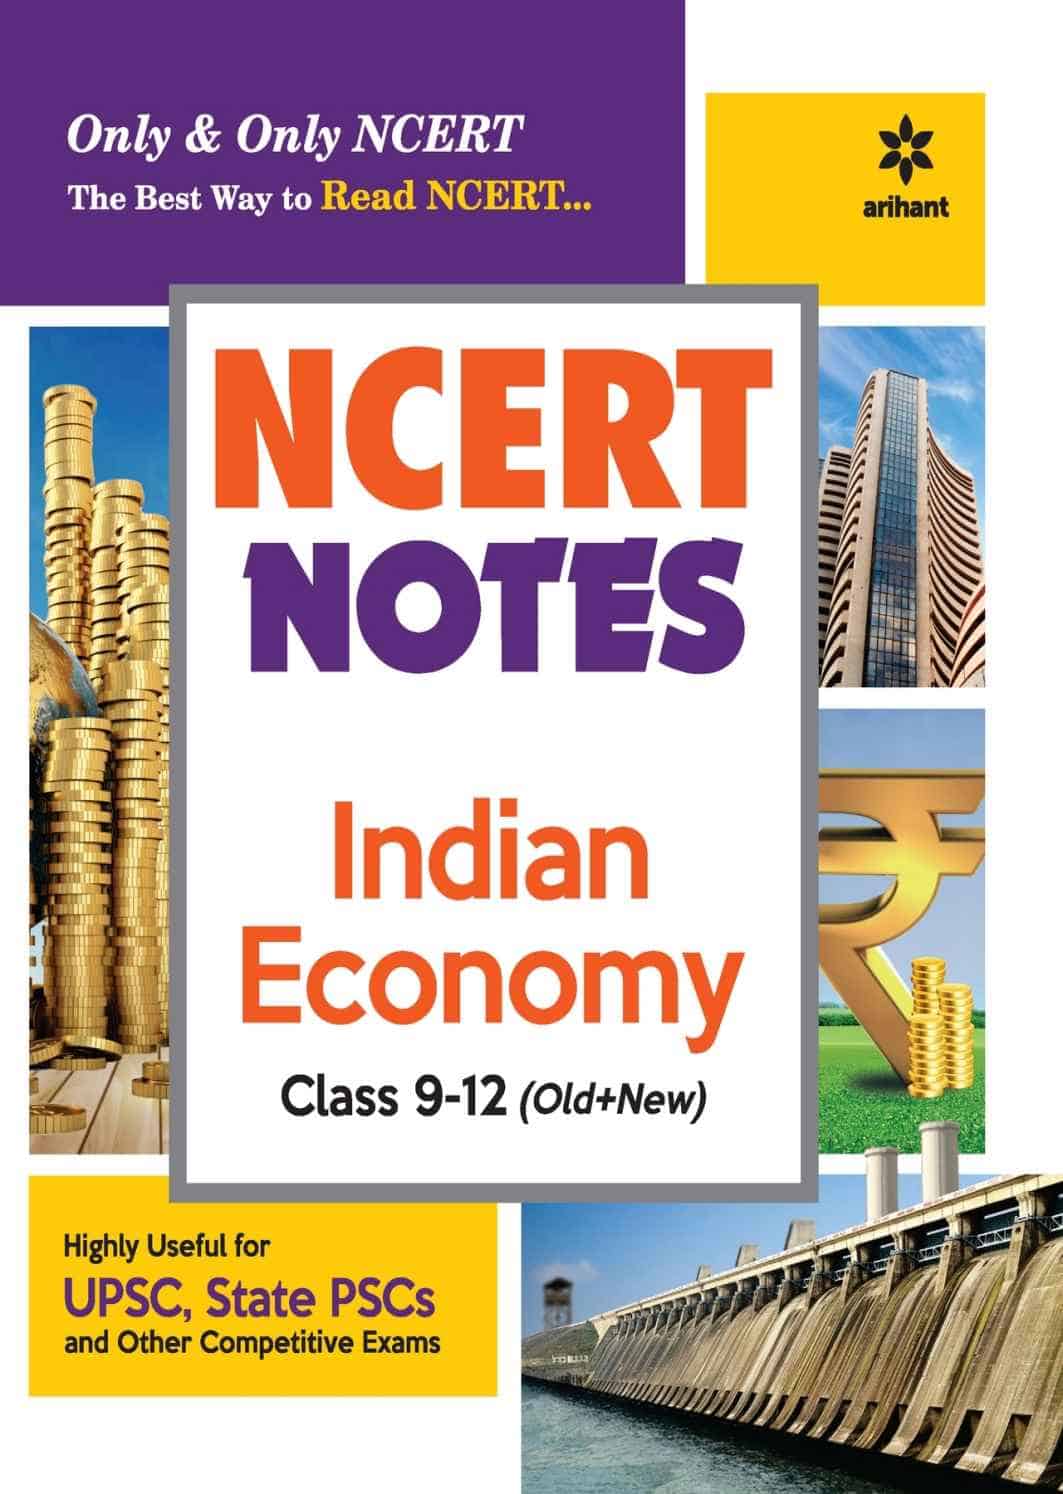 Arihant NCERT Notes Indian Economy - Class 9-12 PDF